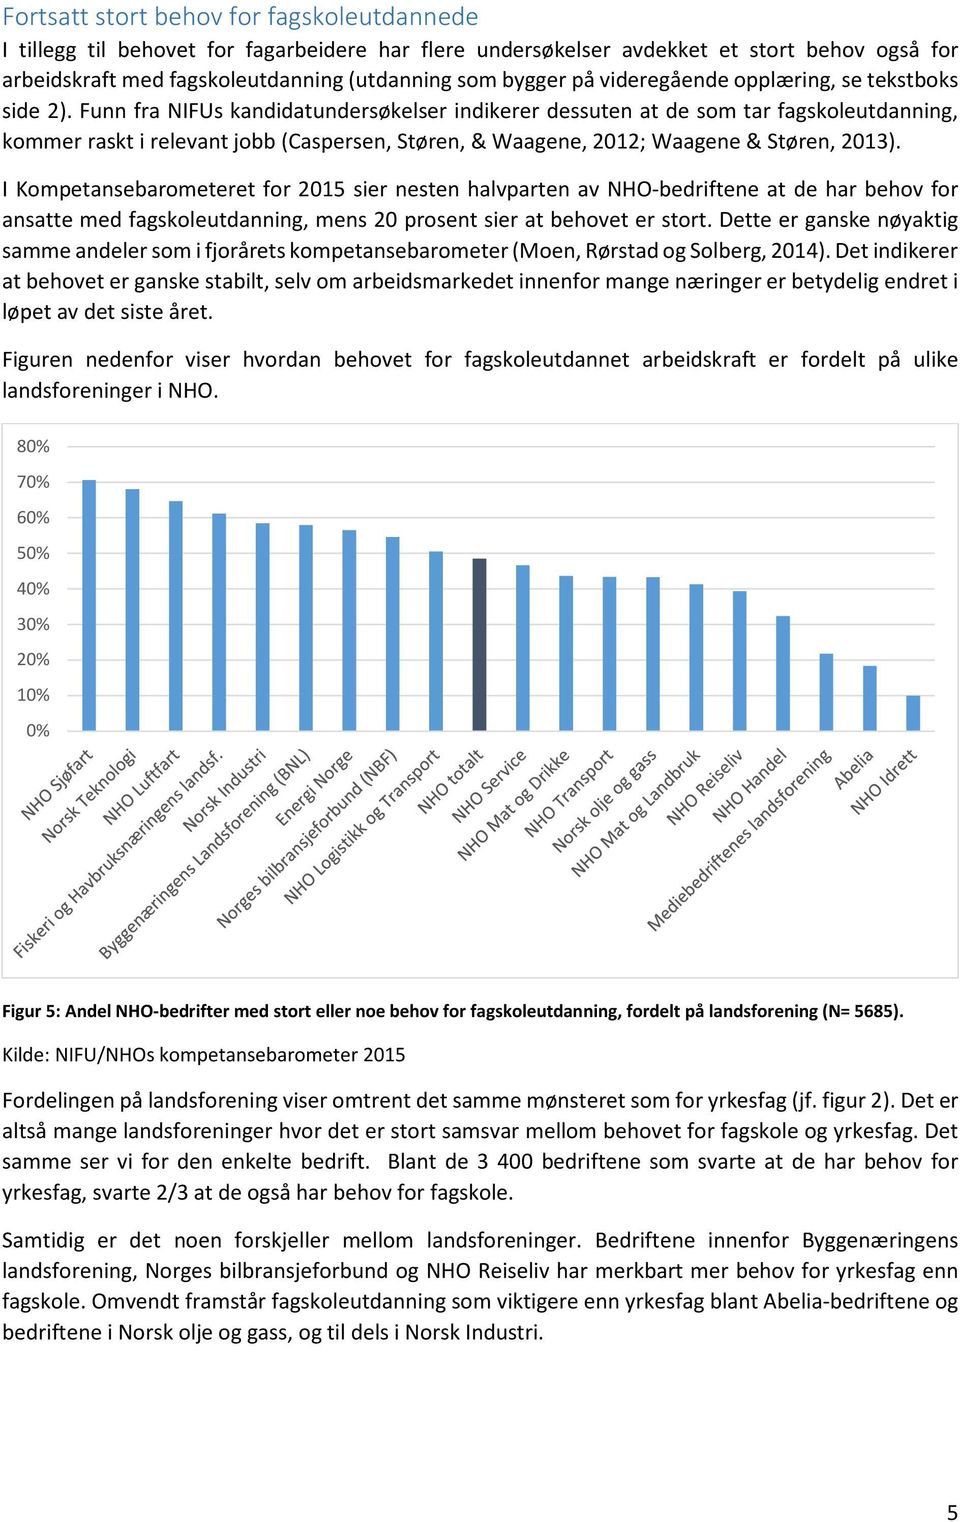 Funn fra NIFUs kandidatundersøkelser indikerer dessuten at de som tar fagskoleutdanning, kommer raskt i relevant jobb (Caspersen, Støren, & Waagene, 2012; Waagene & Støren, 2013).